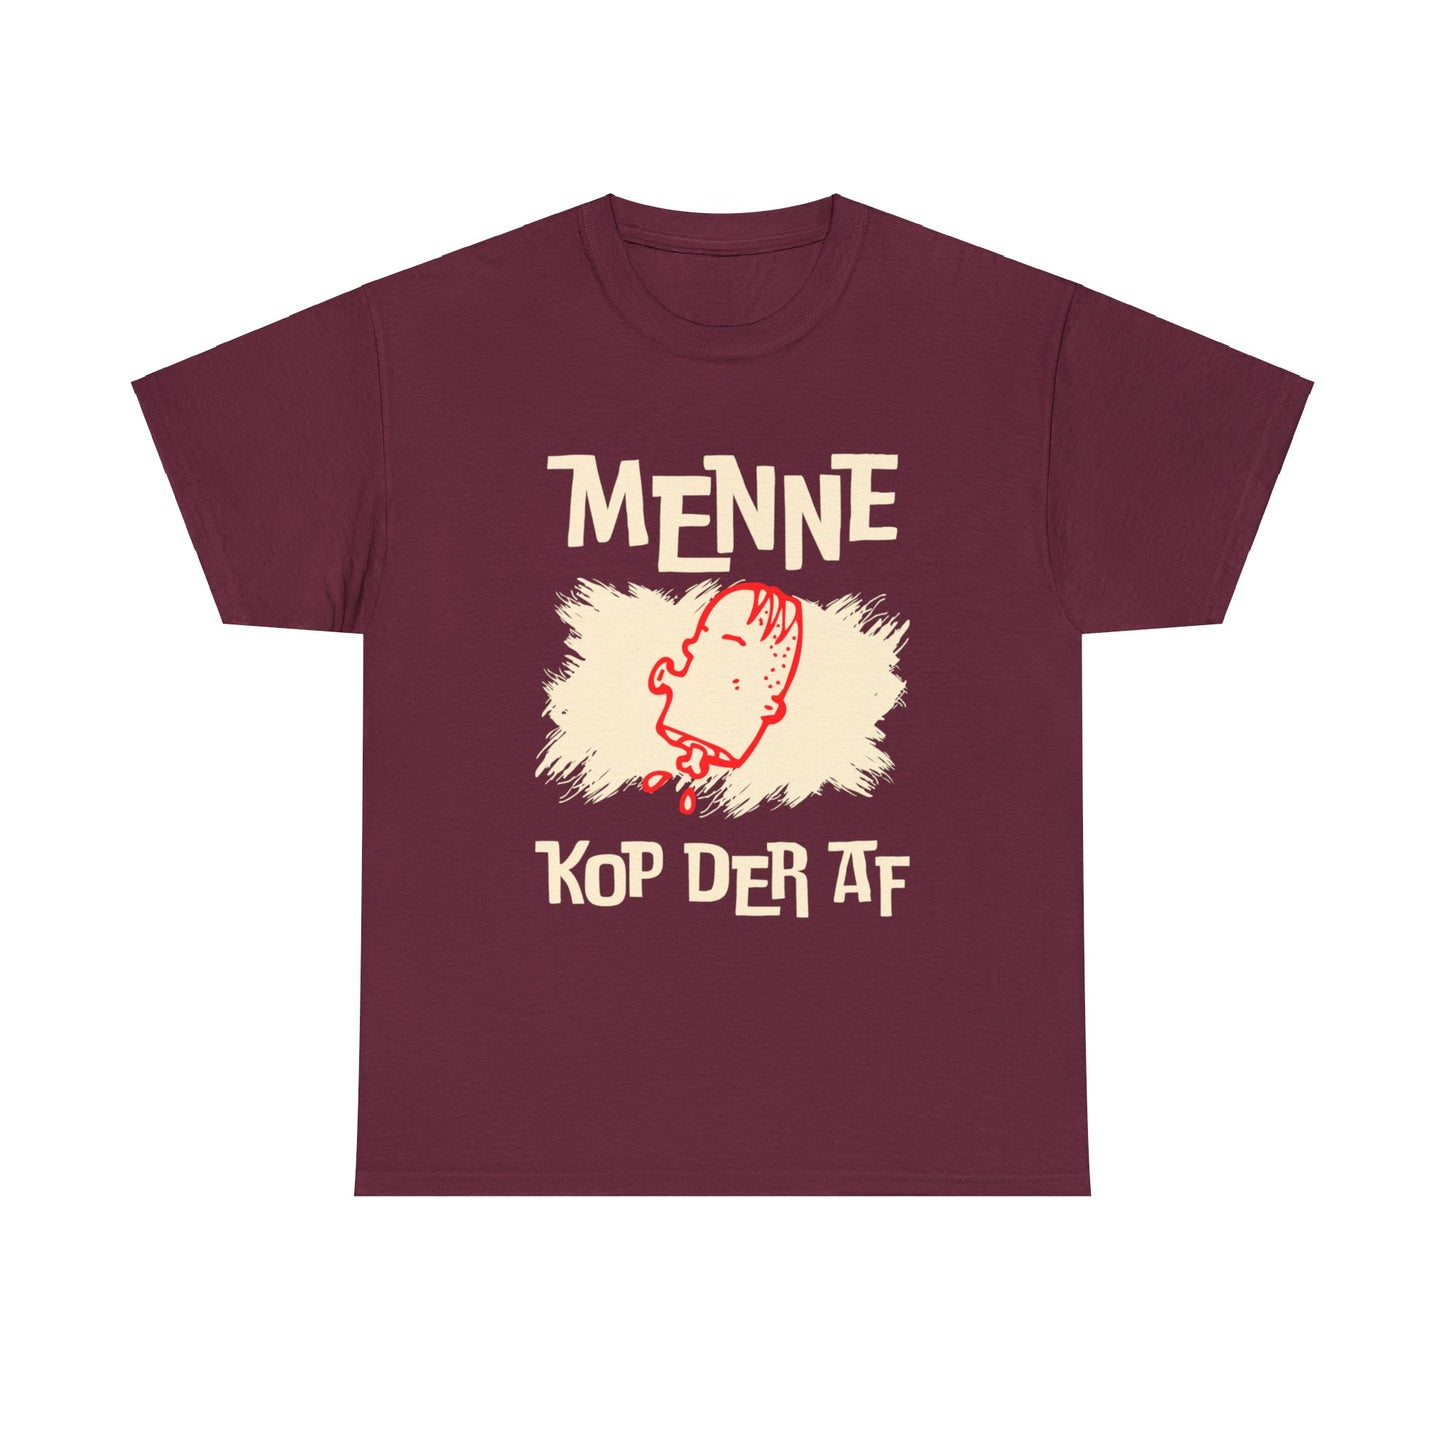 Int Oilsjters - Tshirt - Menne Kop Der Af